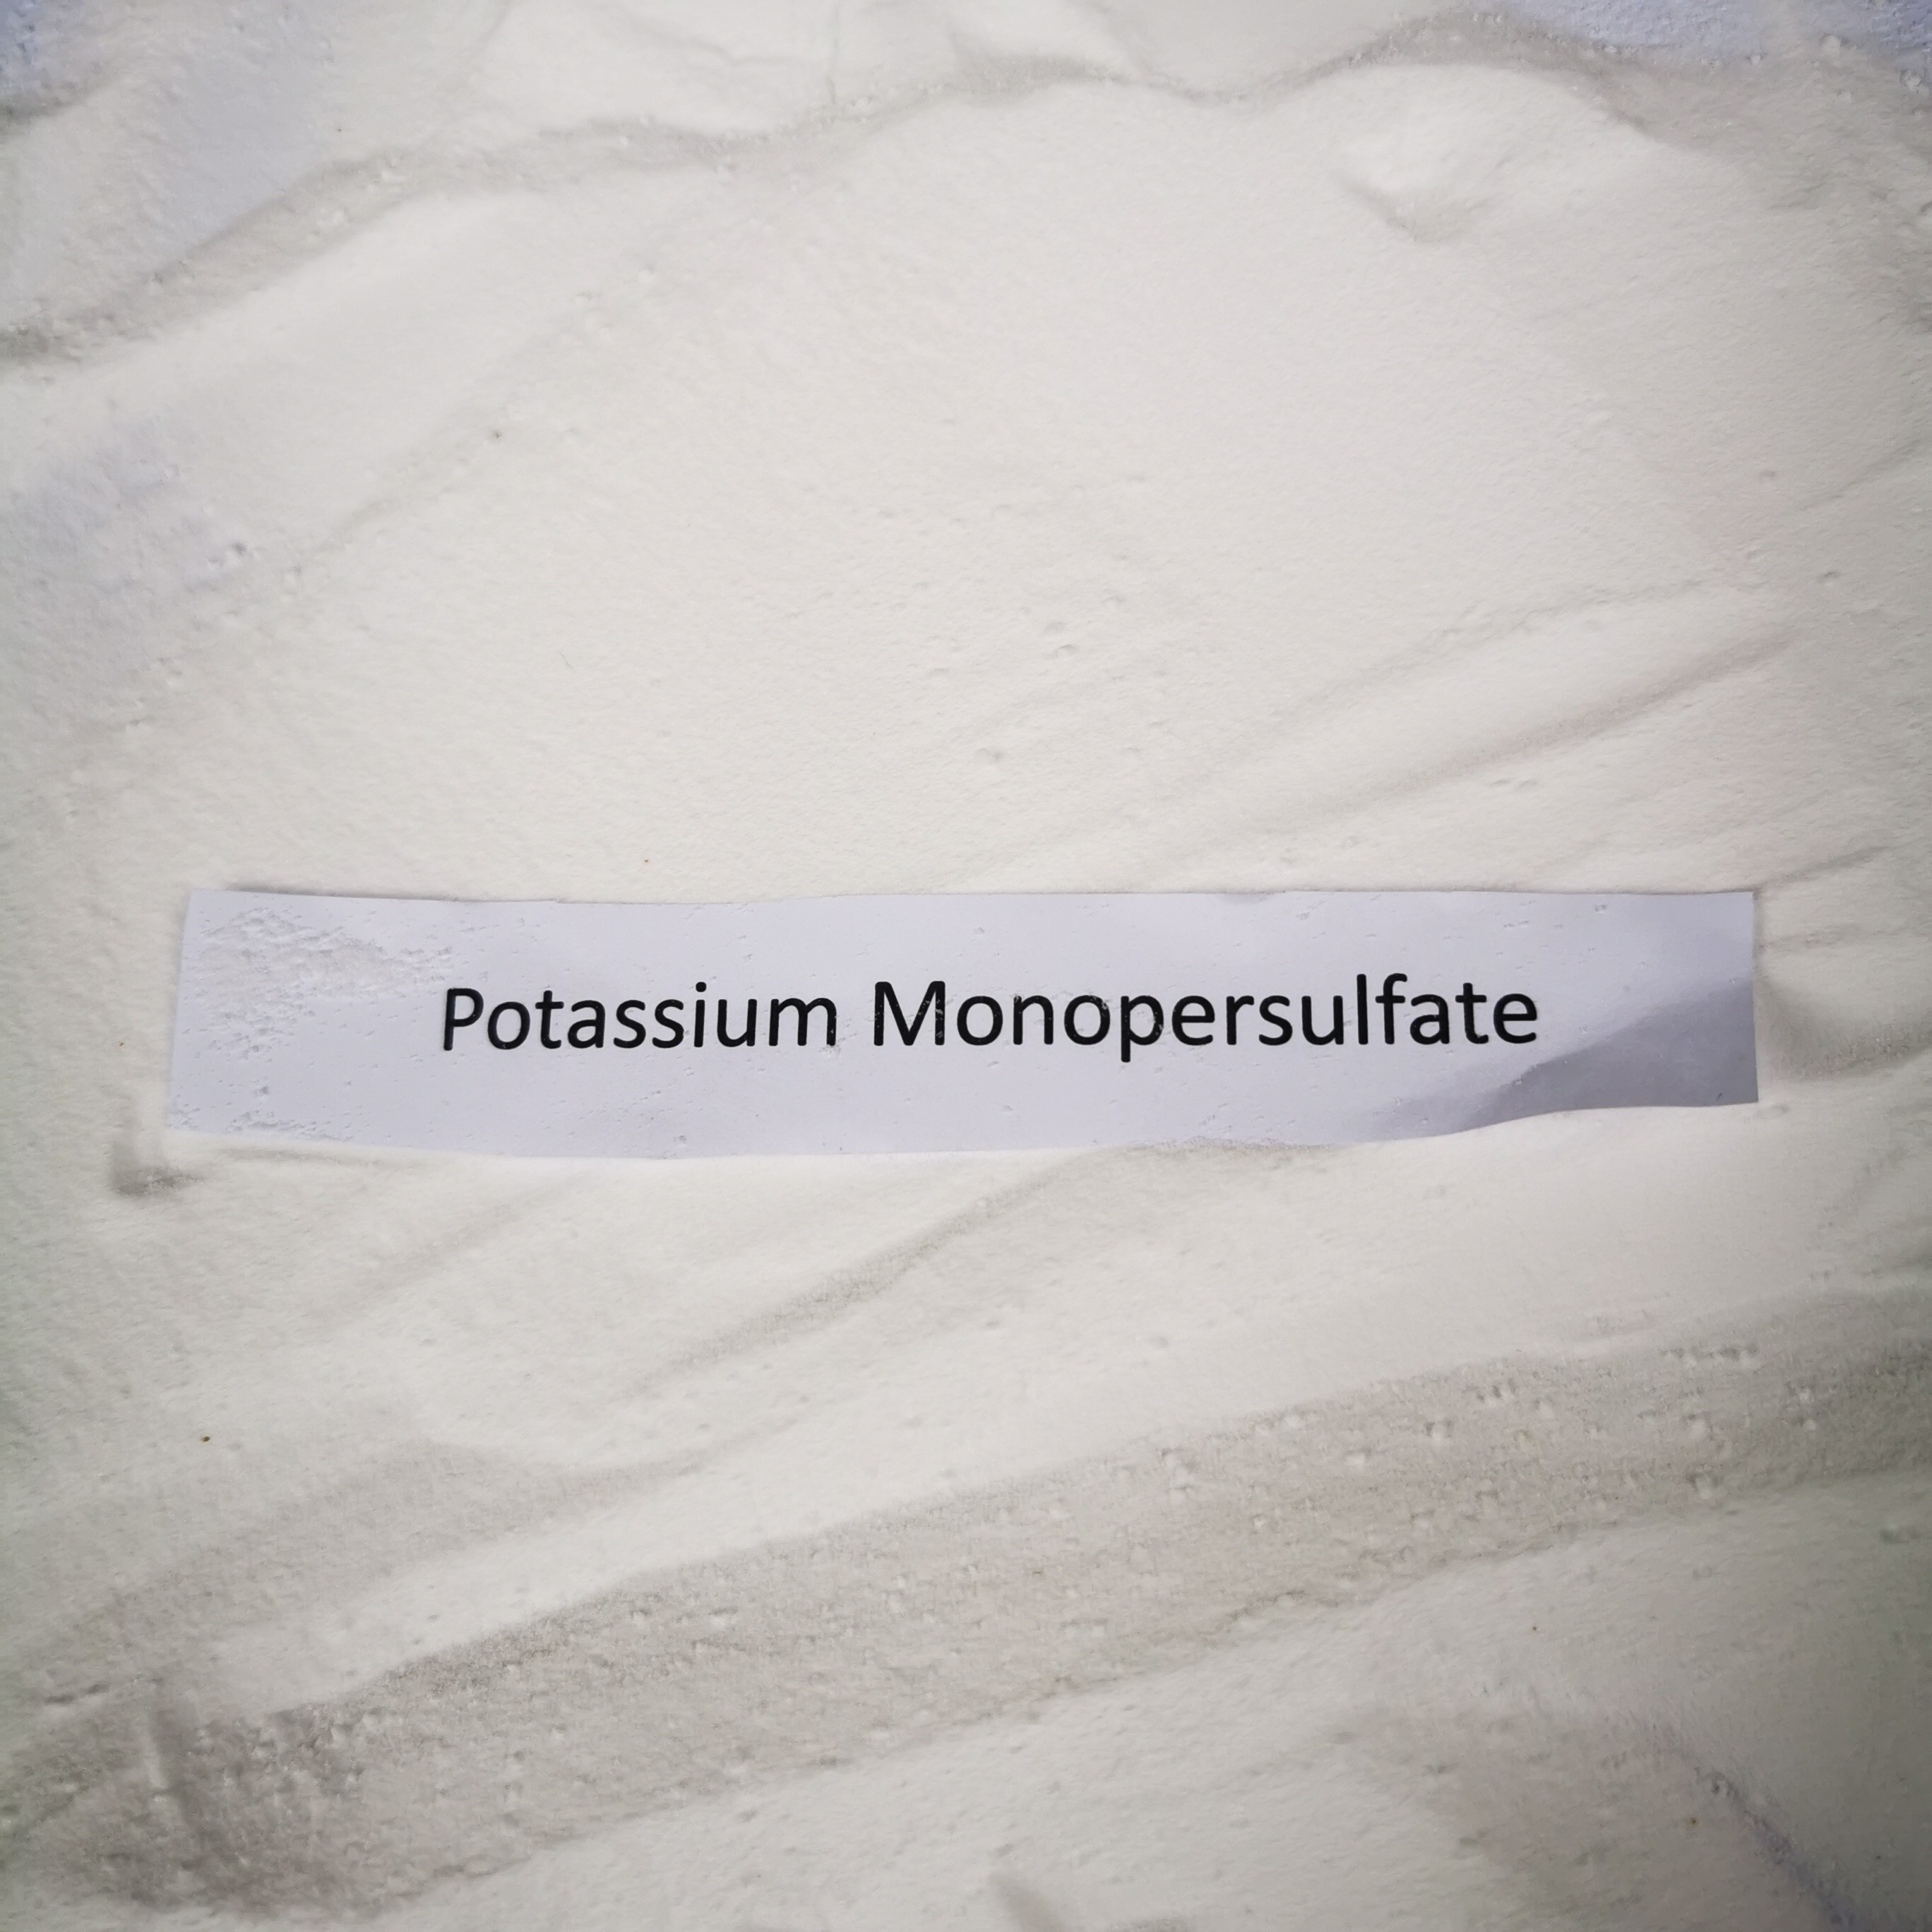 Composé de Monopersulfate de potassium en tant que l'oxydant ou désinfectant puissant